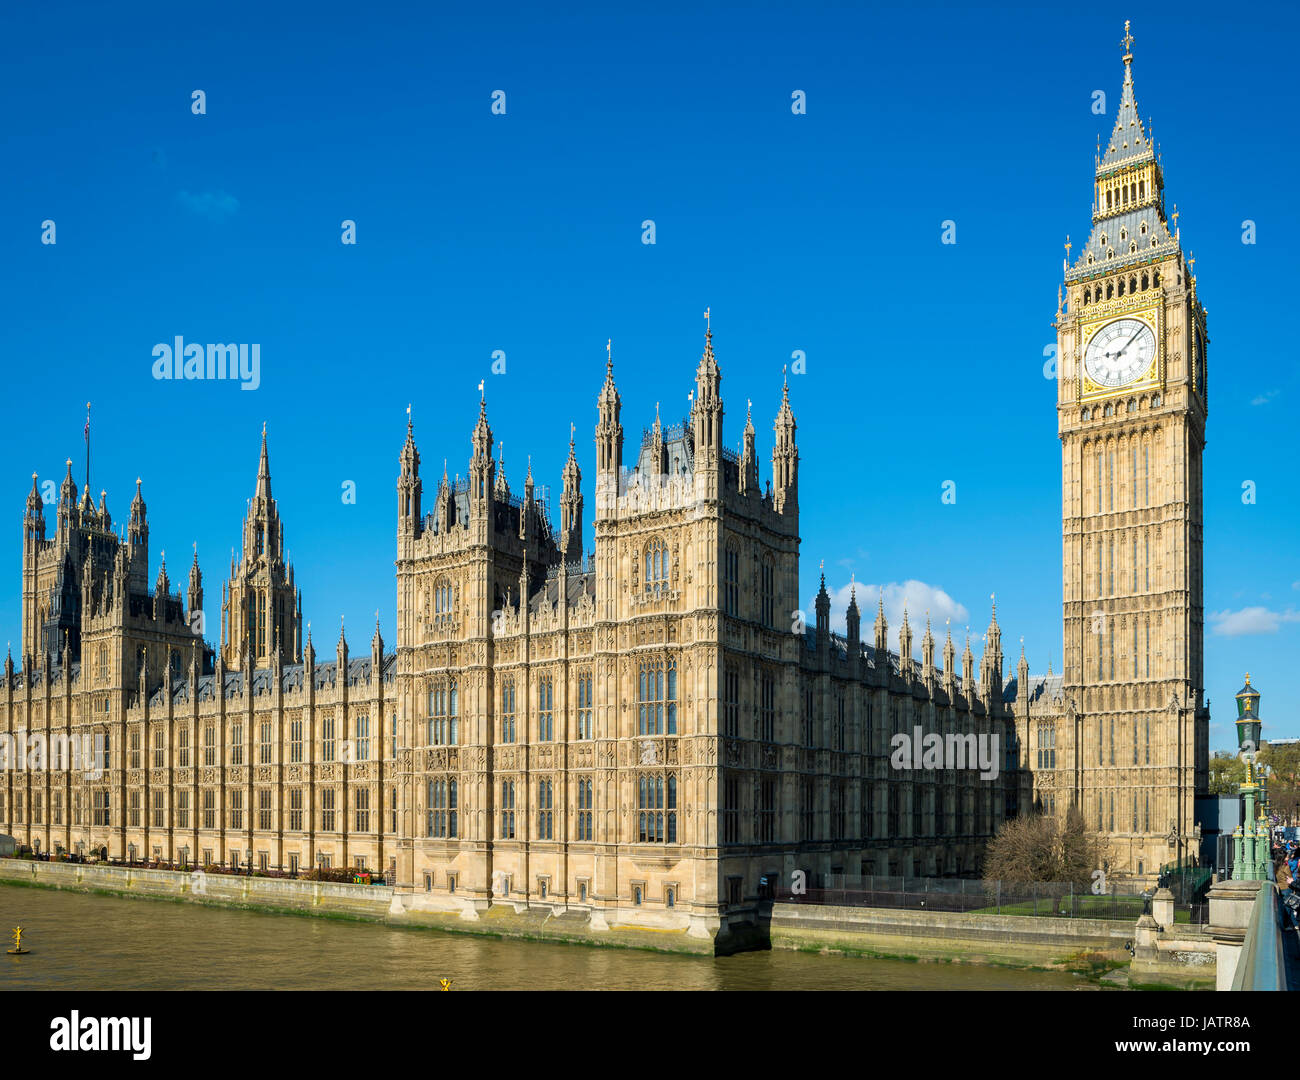 Ciel bleu matin vue sur Big Ben et les chambres du Parlement de Westminster Palace à proximité du pont de Londres, Angleterre Banque D'Images